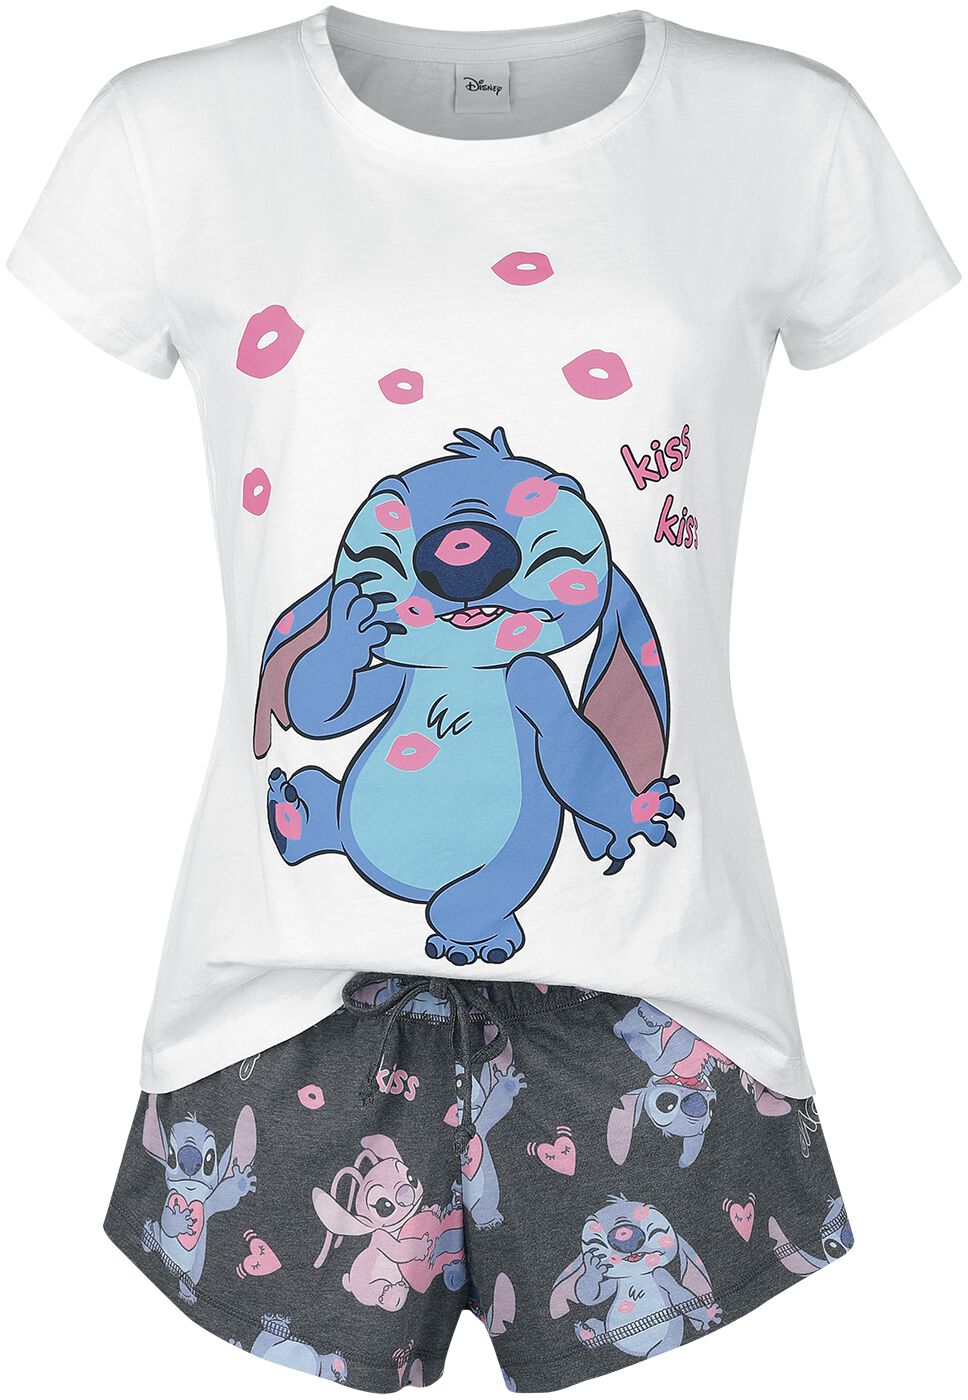 Chemise de nuit Disney Lilo & Stitch pour femmes 